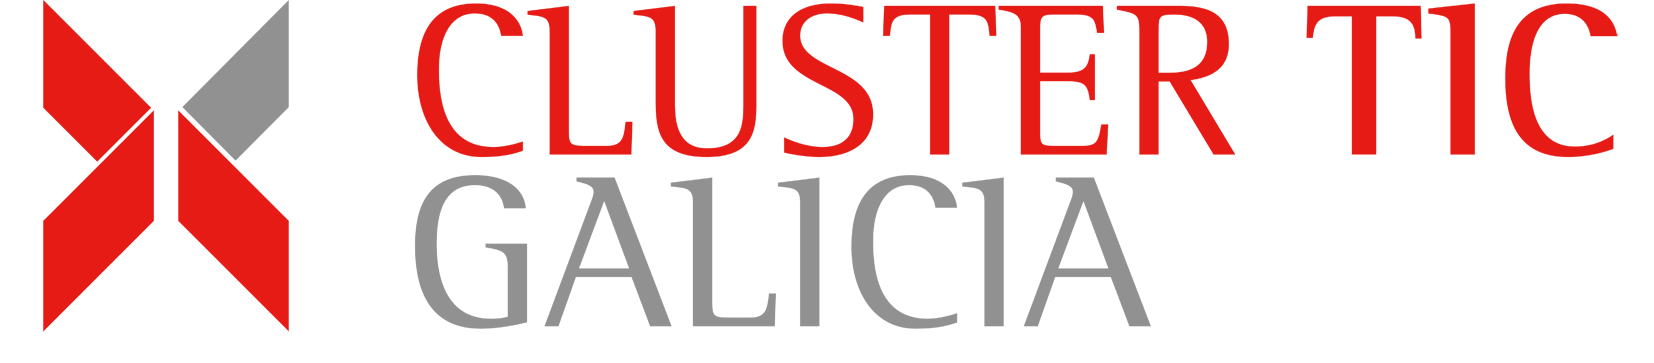 Logotipo Clúster TIC